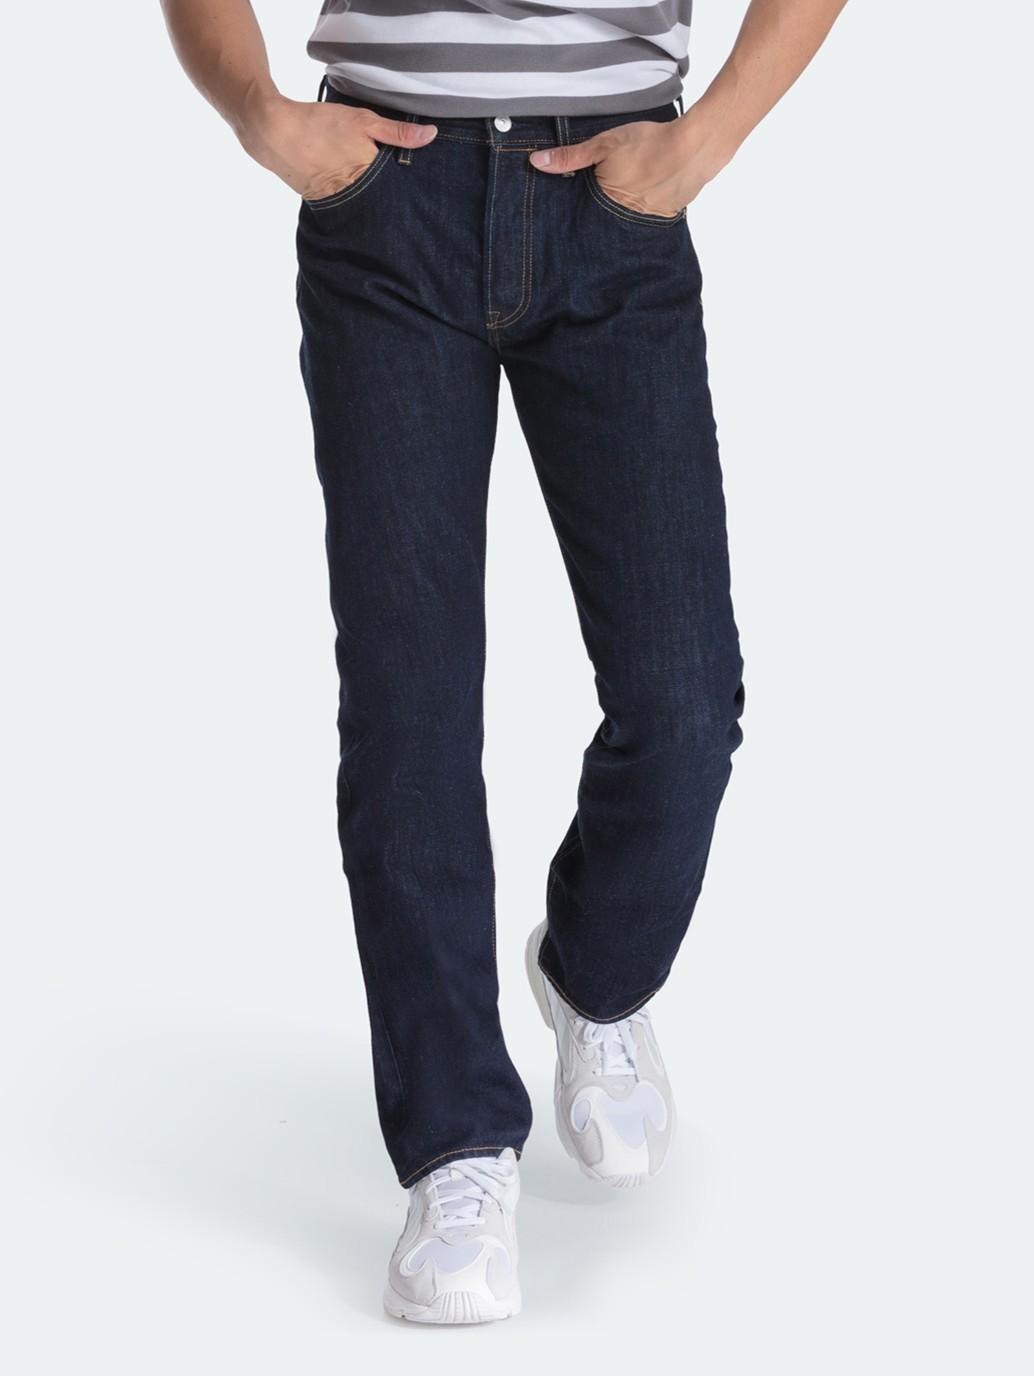 Levi's® SG 501® Original Fit Jeans for Men - 005011484